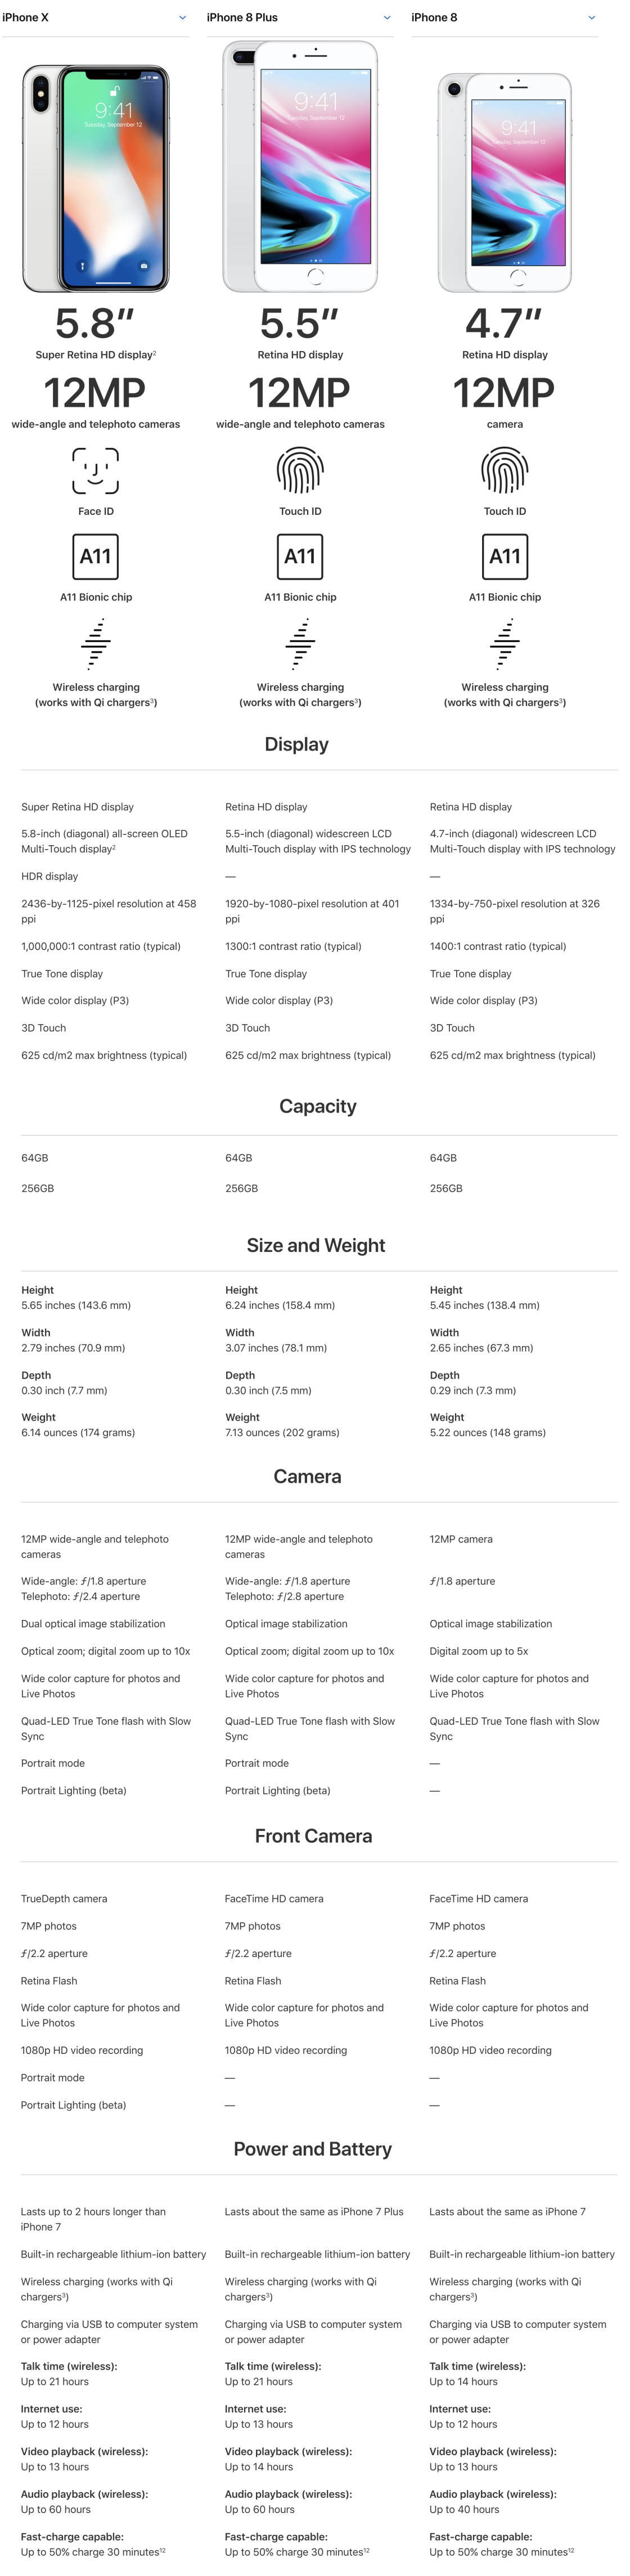 iPhone 8 vs iPhone X Camera no script